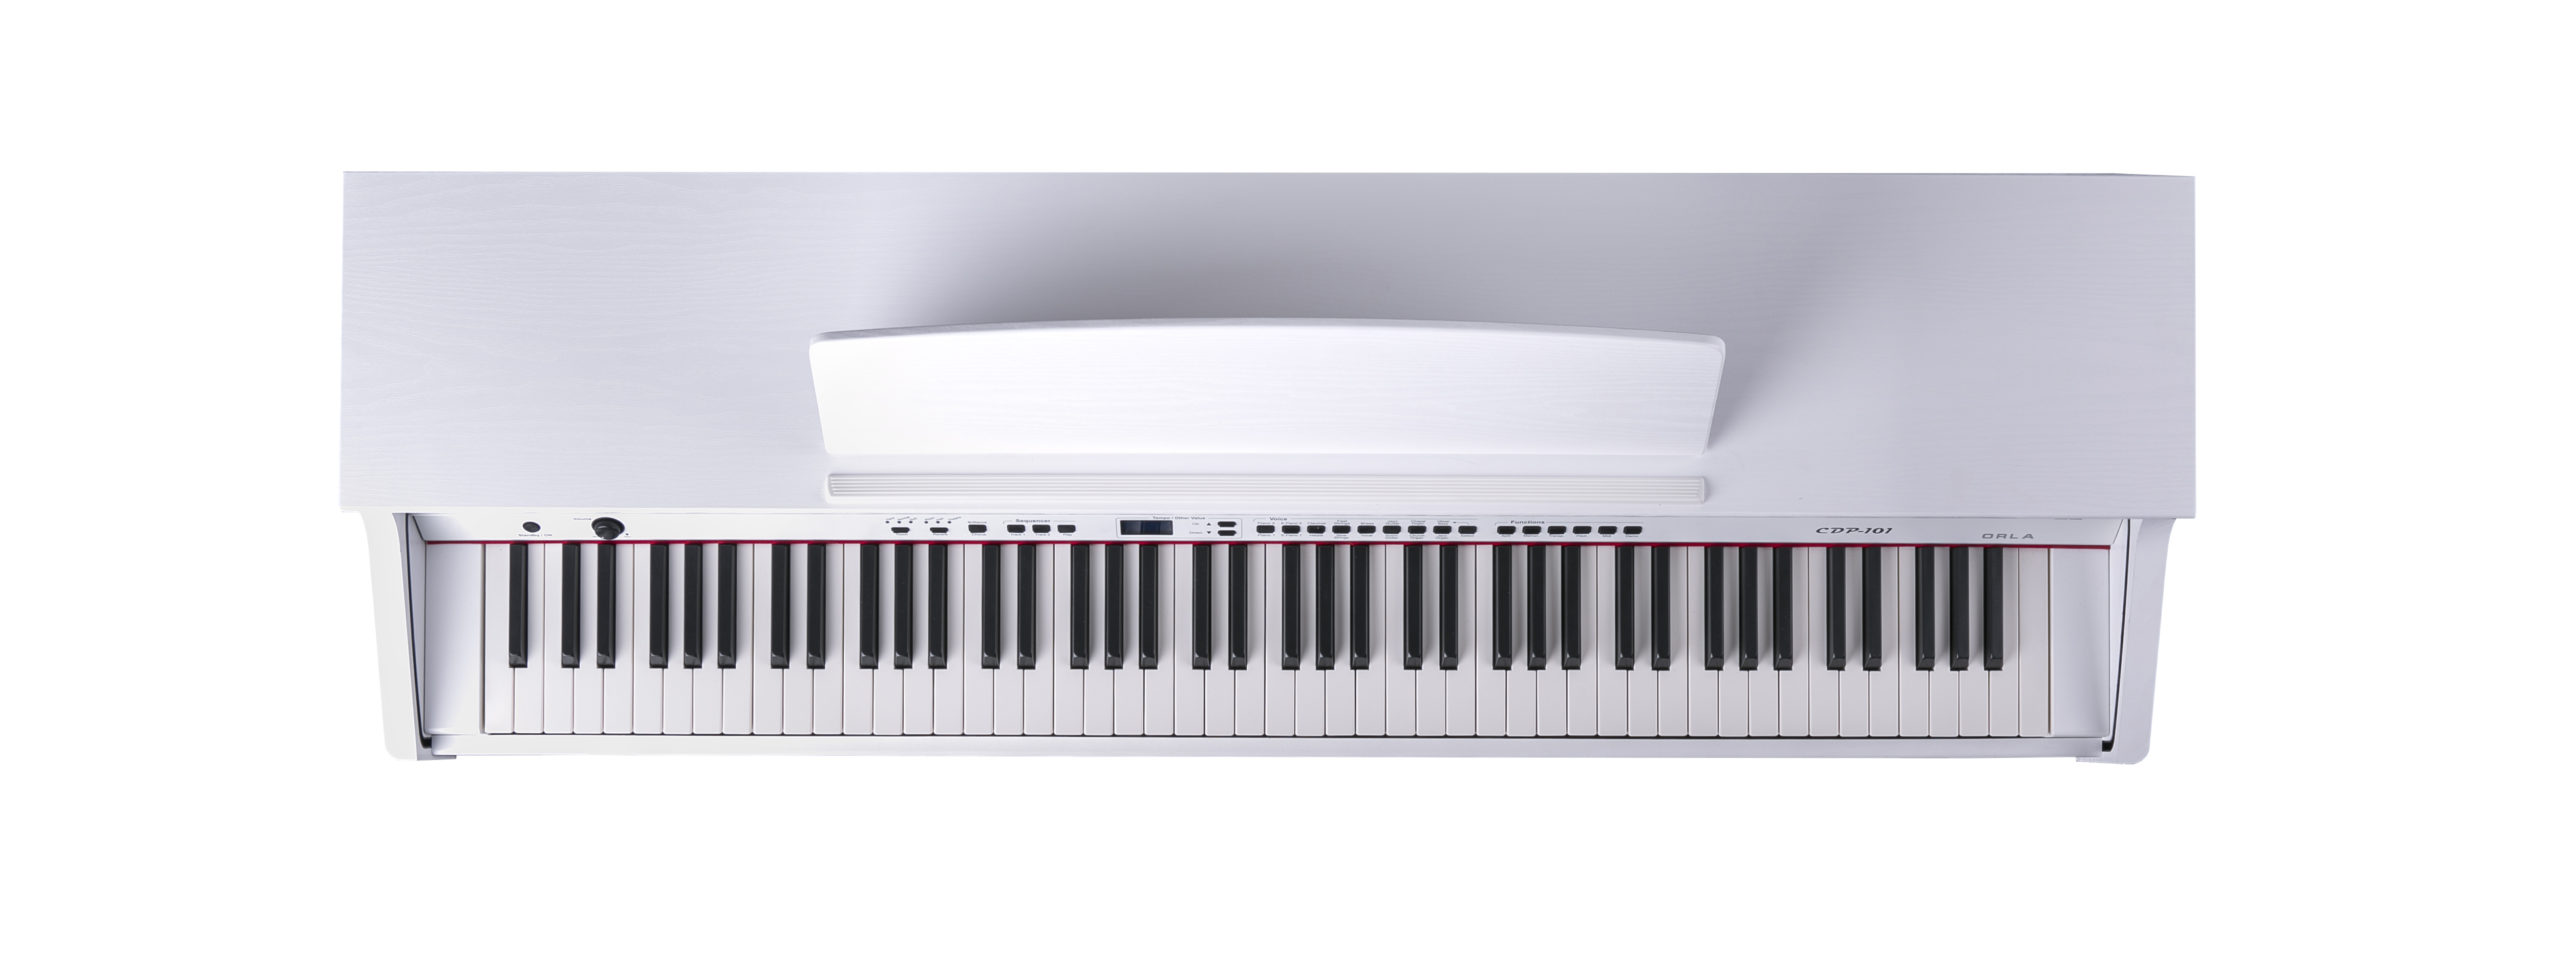 Orla CDP-101-SATIN-WHITE Цифровое пианино, белое матовое, купить в prostore.me